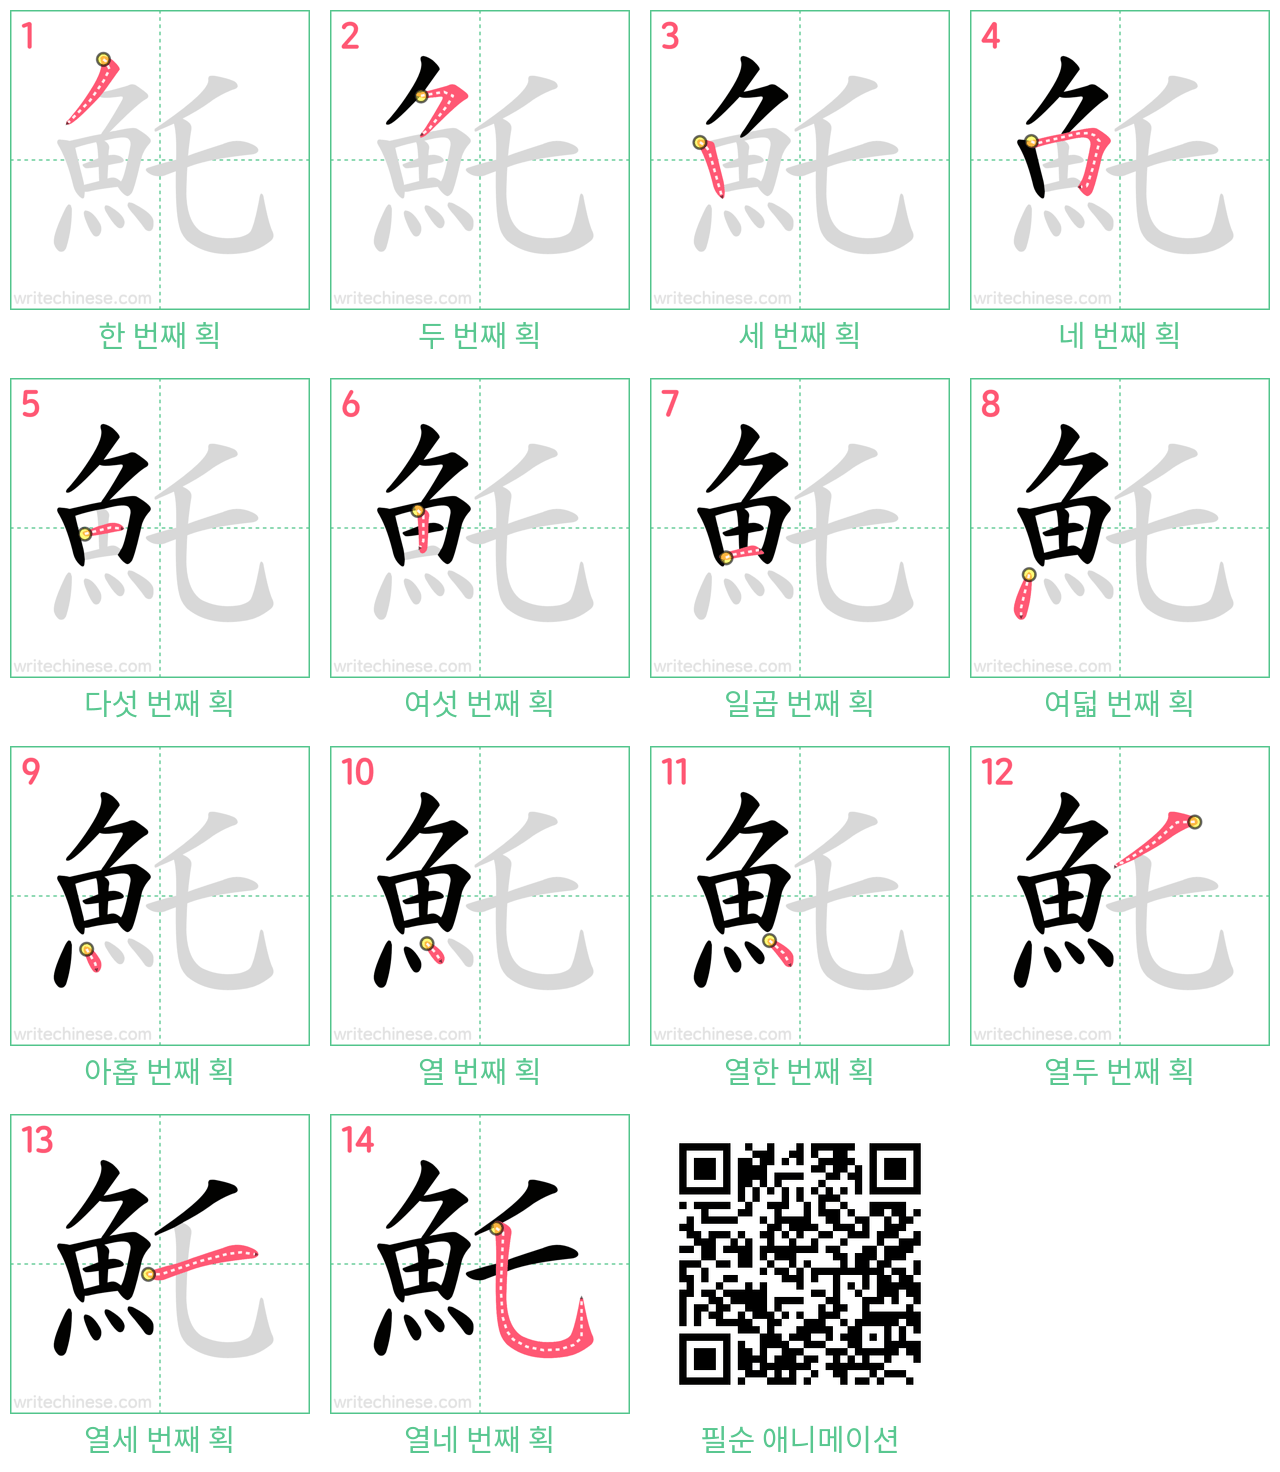 魠 step-by-step stroke order diagrams